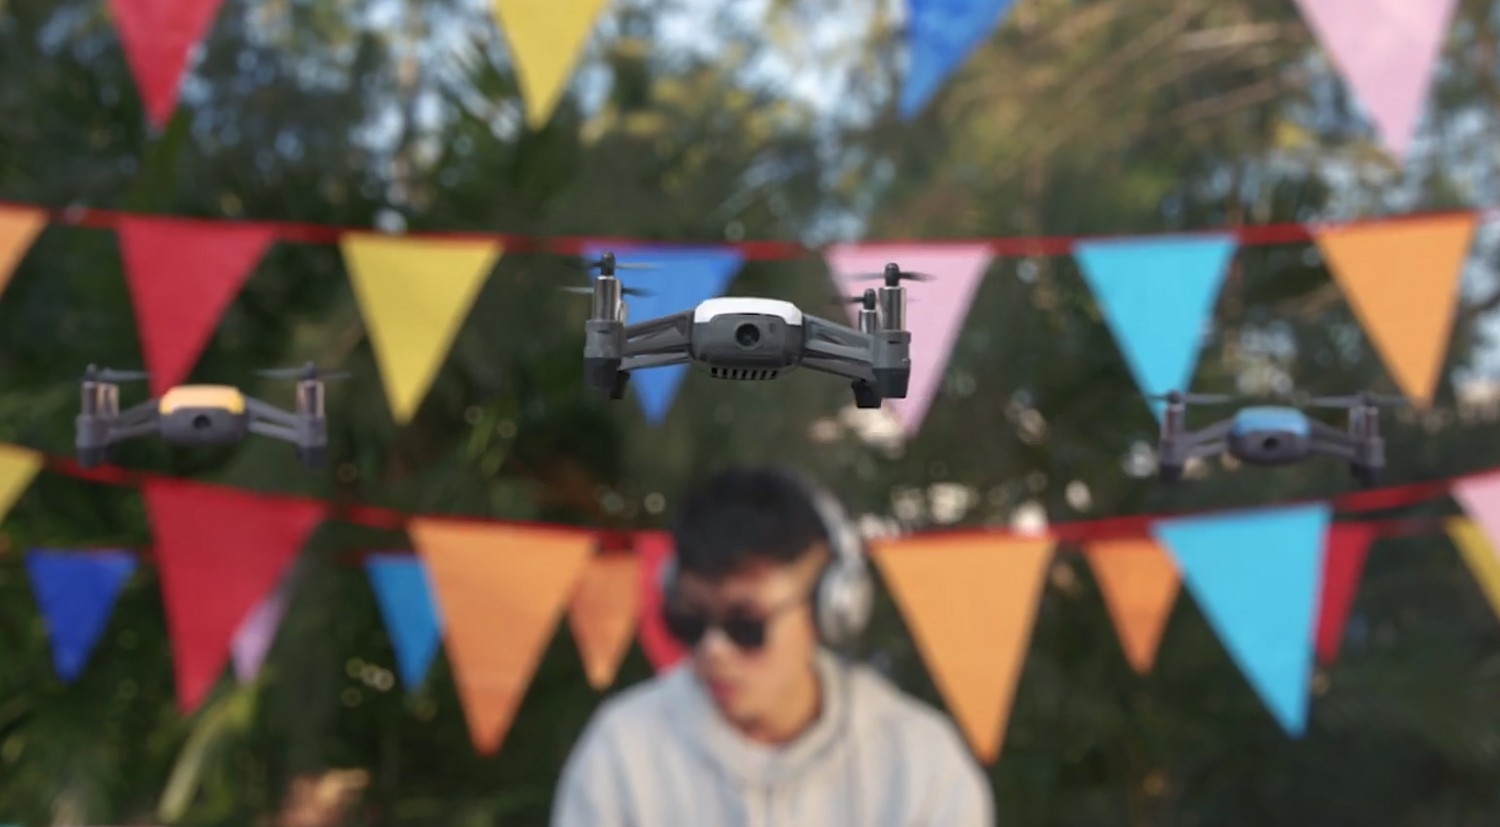 Představení drona Tello